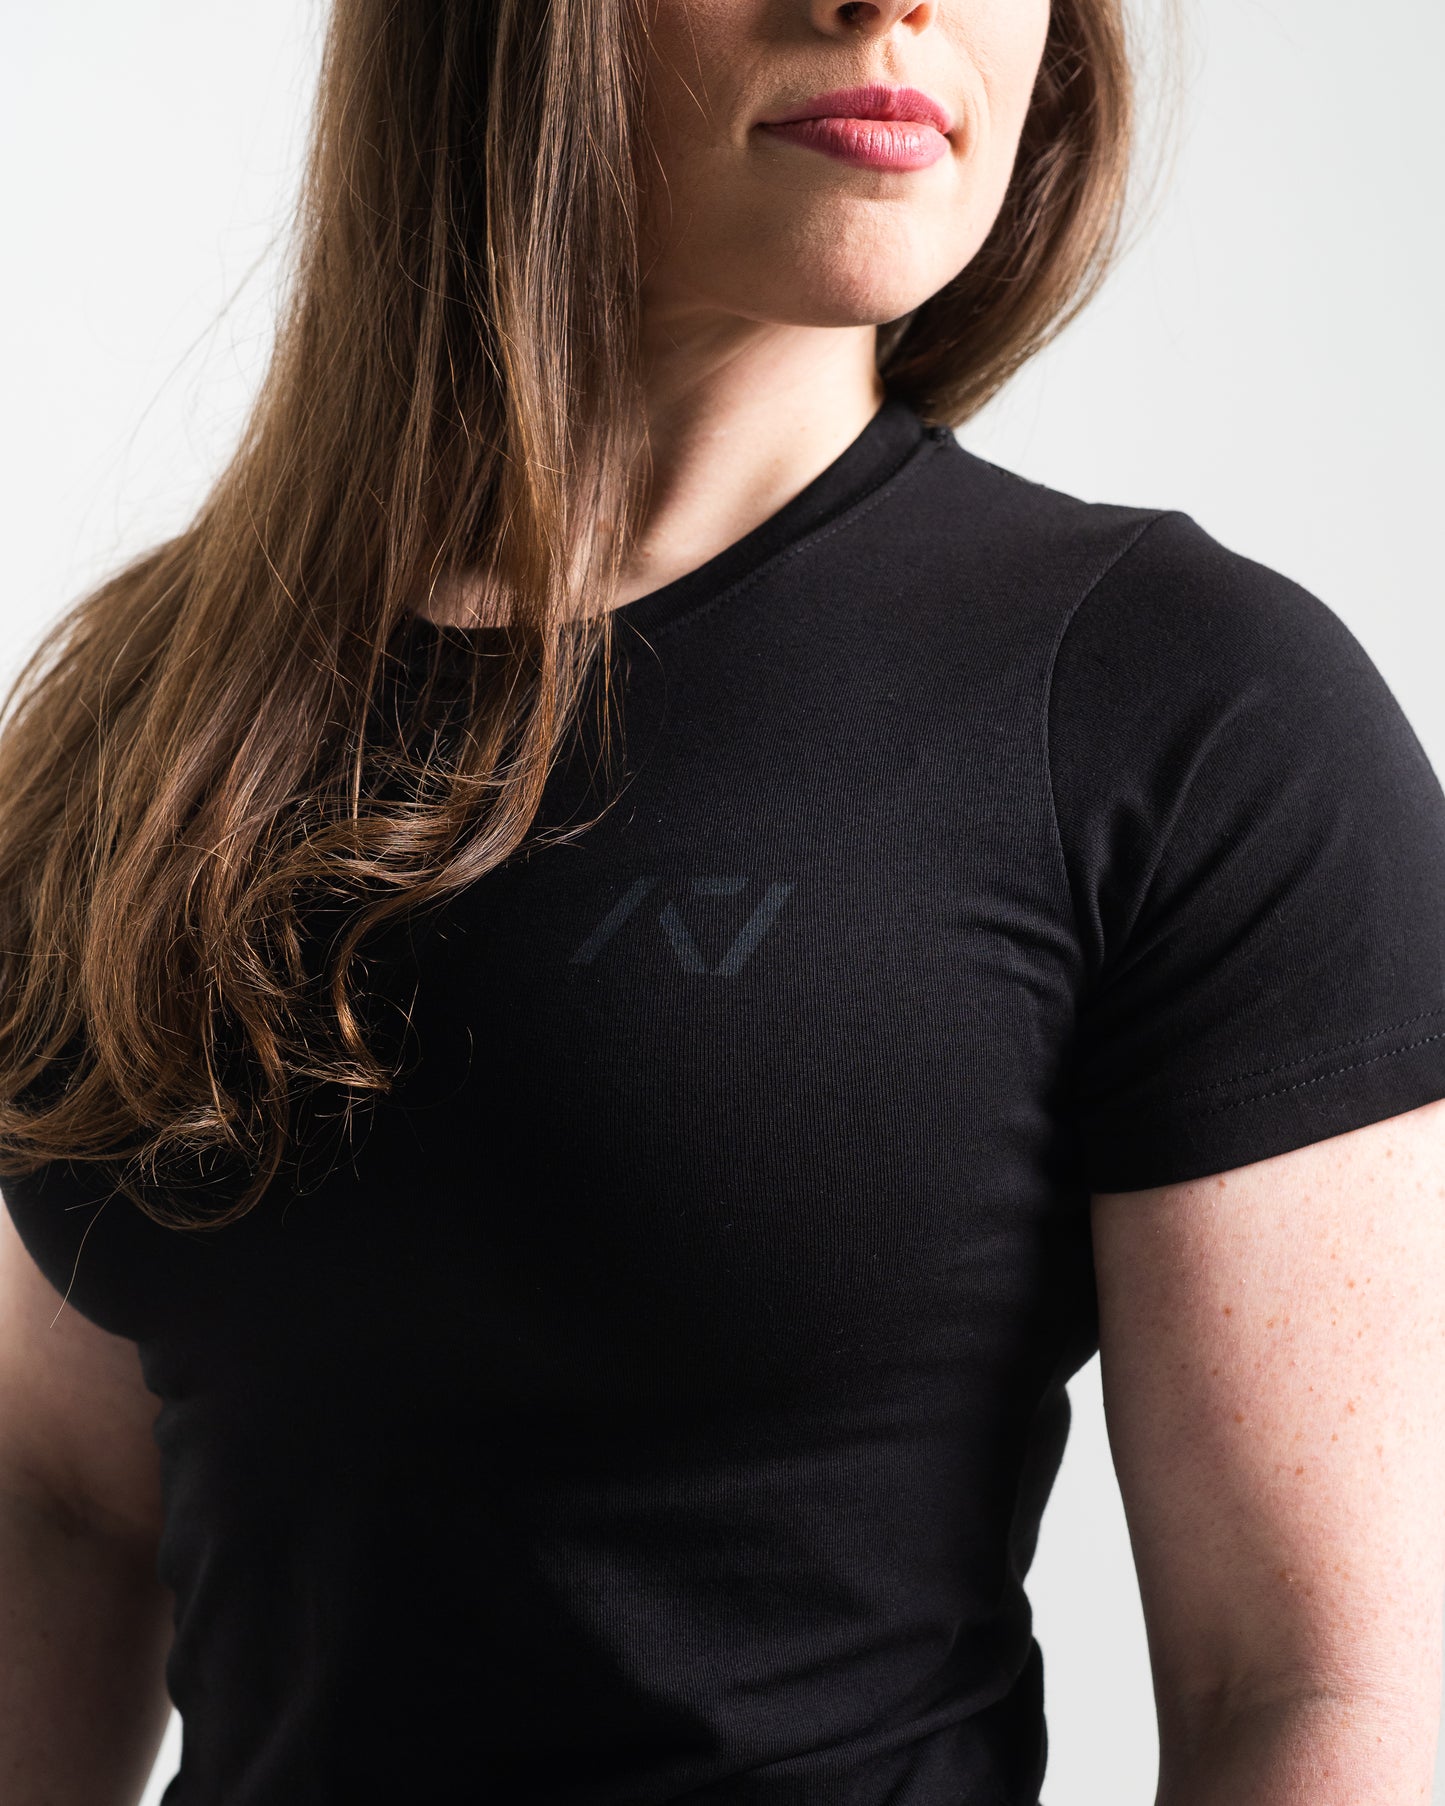 
                  
                    Crest Bar Grip Women's Shirt - Stealth
                  
                